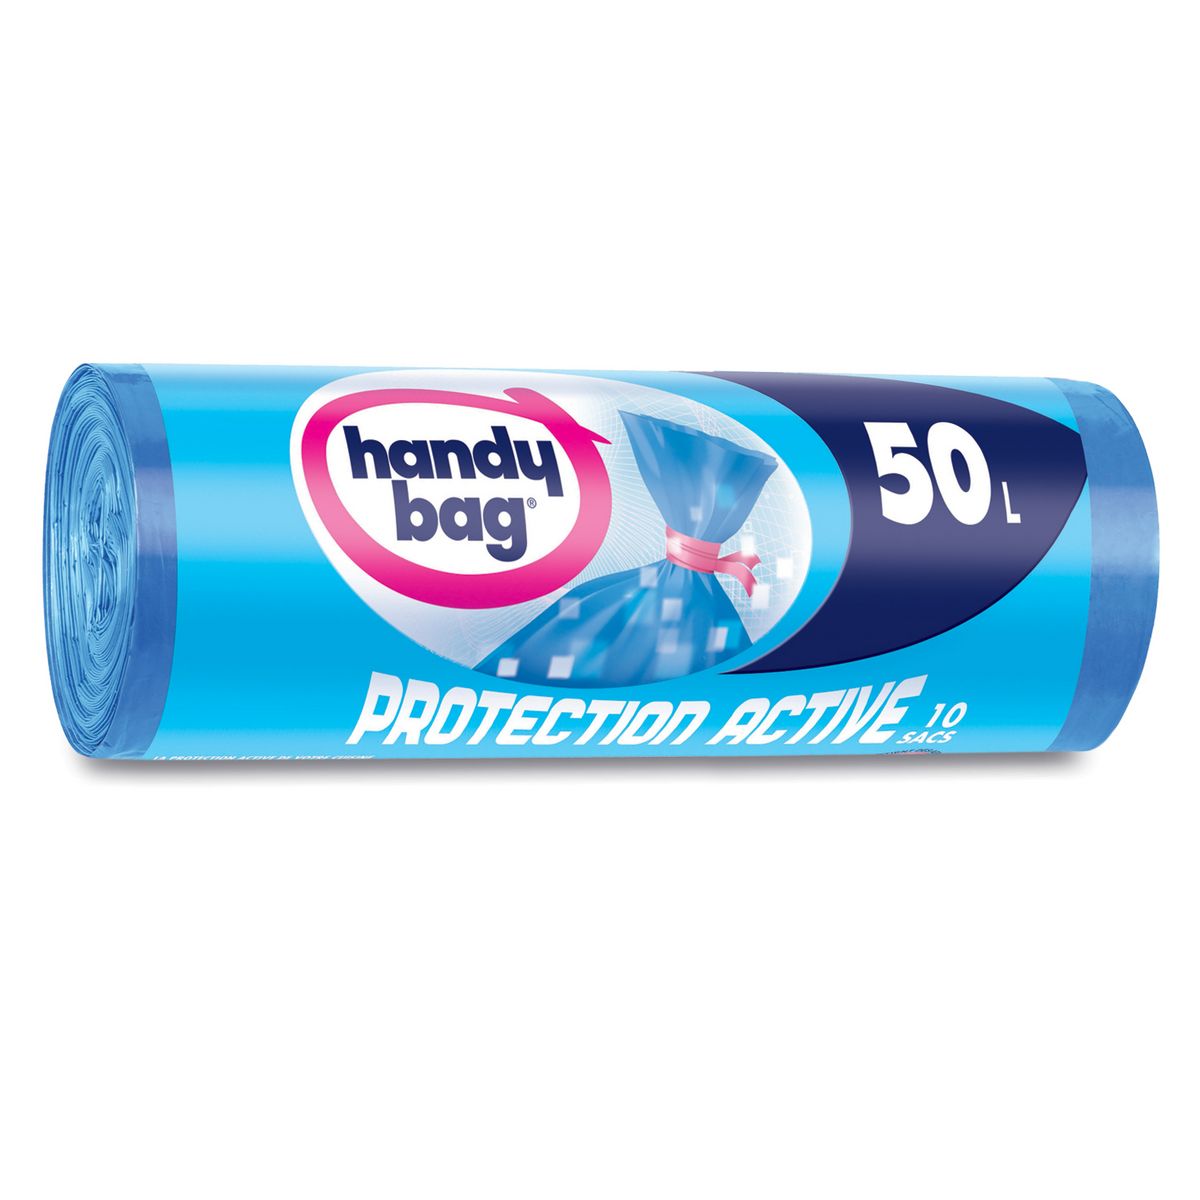 HANDY BAG Sacs poubelle protection active liens détachables 50l 10